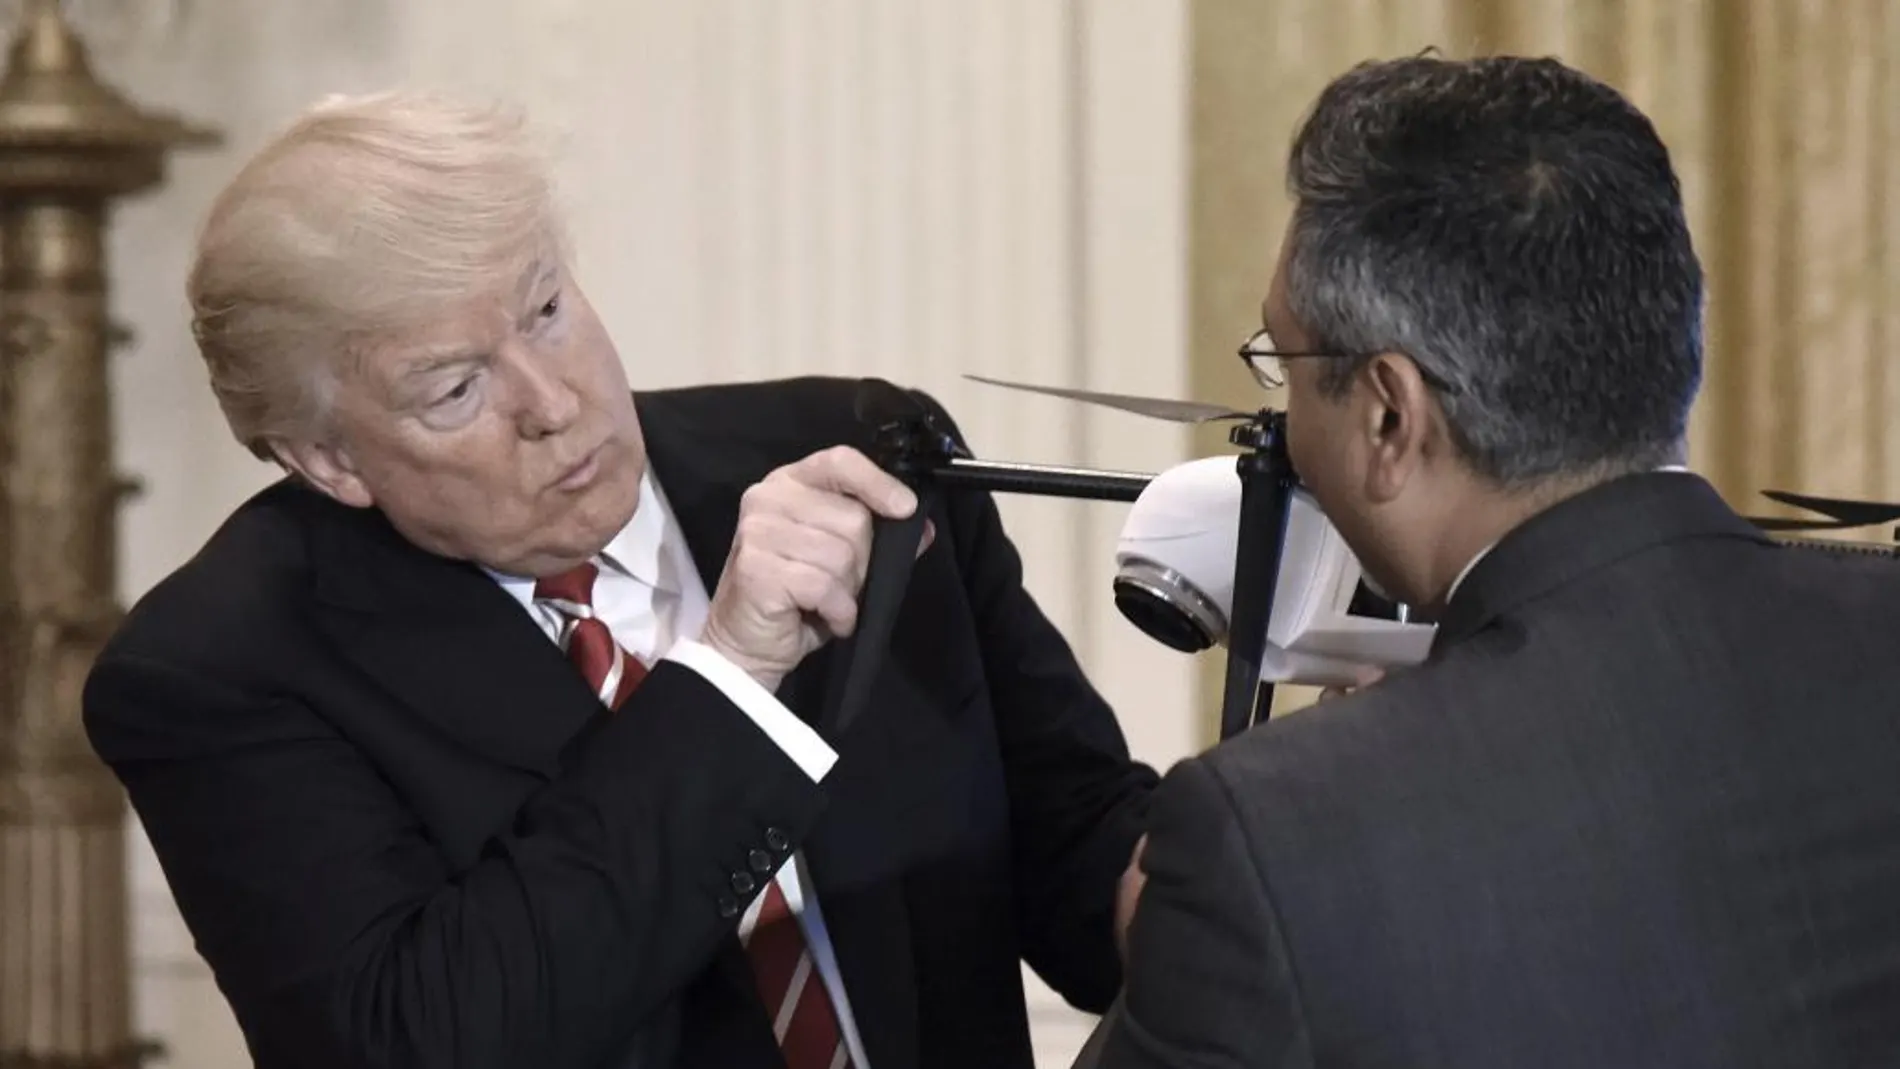 El presidente estadounidense, Donald Trump, sujeta un dron en un acto hoy en la Casa Blanca.